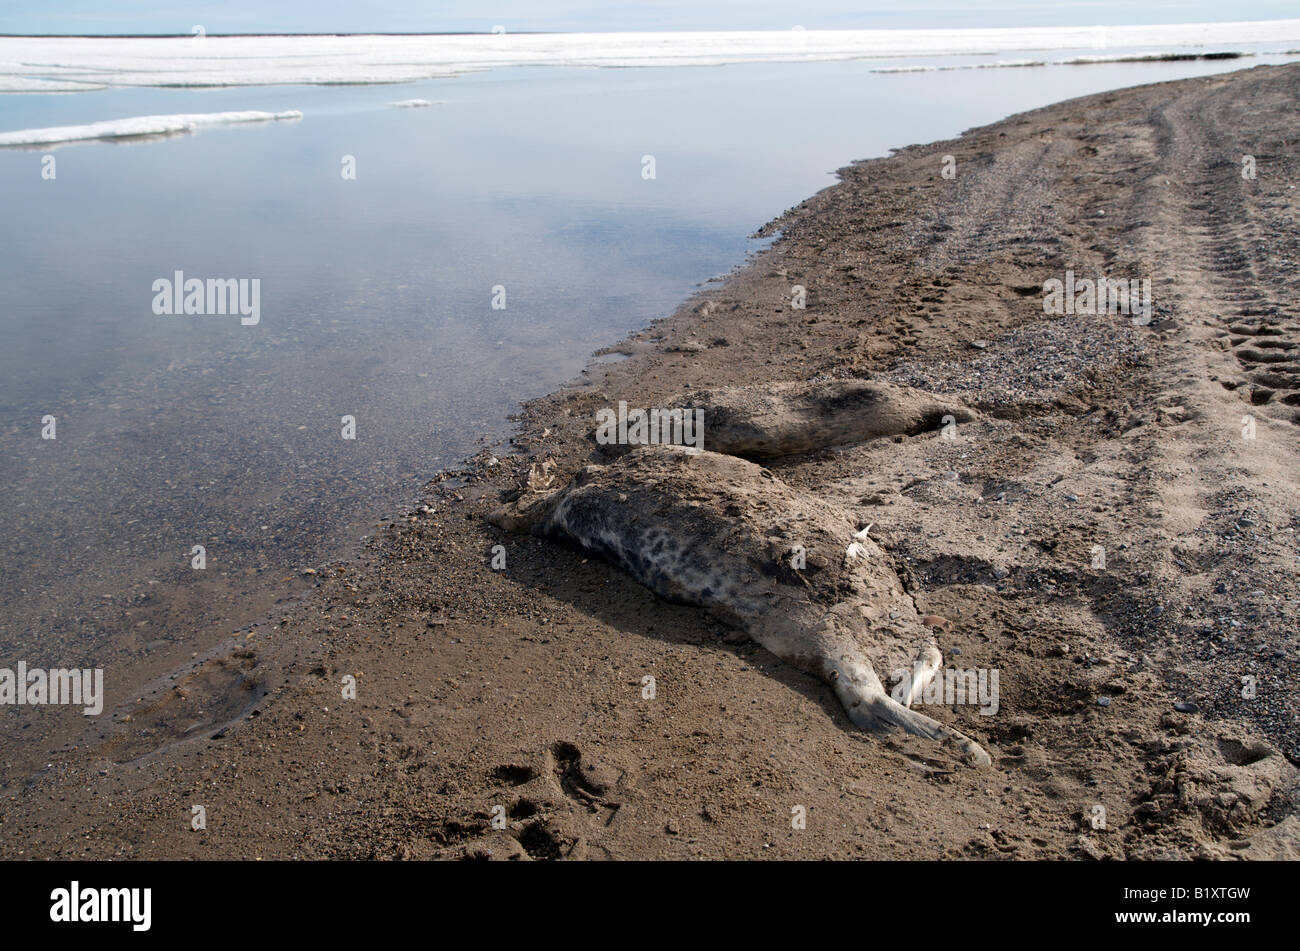 Rohbau eines Seeleoparden am Strand der arktischen Gemeinschaft Sachs Harbour, Nordwest-Territorien, Kanada gesehen. Kanadische Arktis Stockfoto